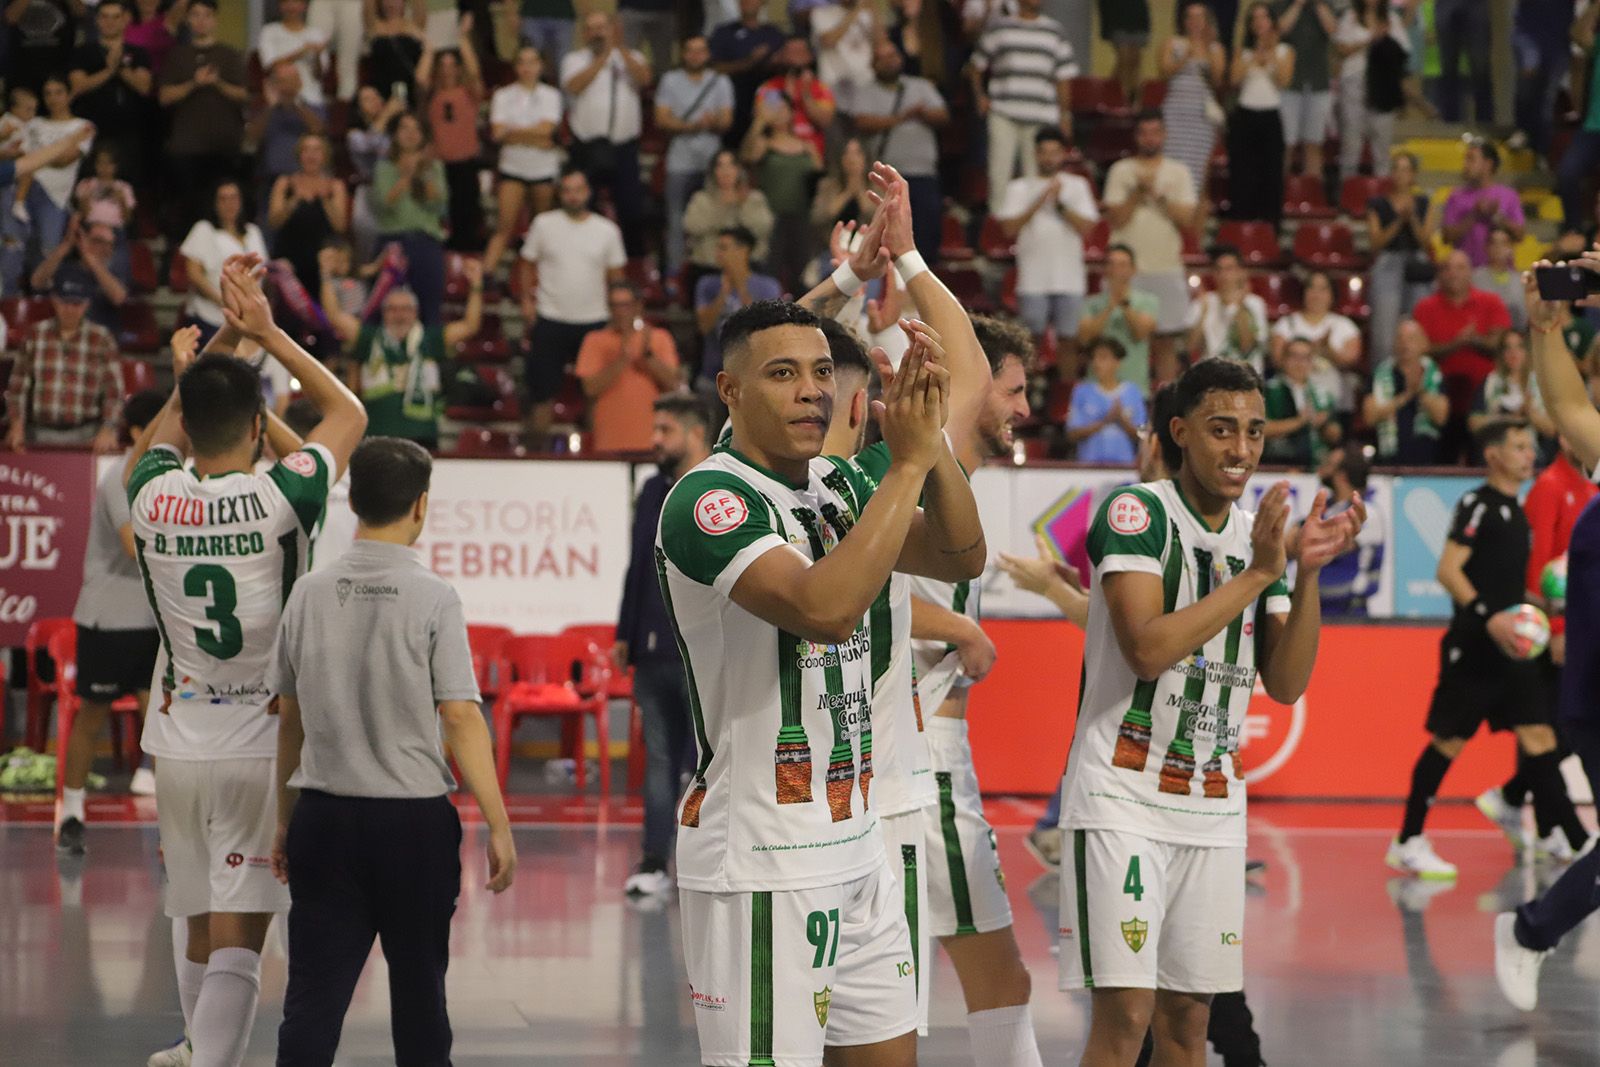 Córdoba Futsal - Jaén Paraíso | Las imágenes del partido en el Palacio Vista Alegre